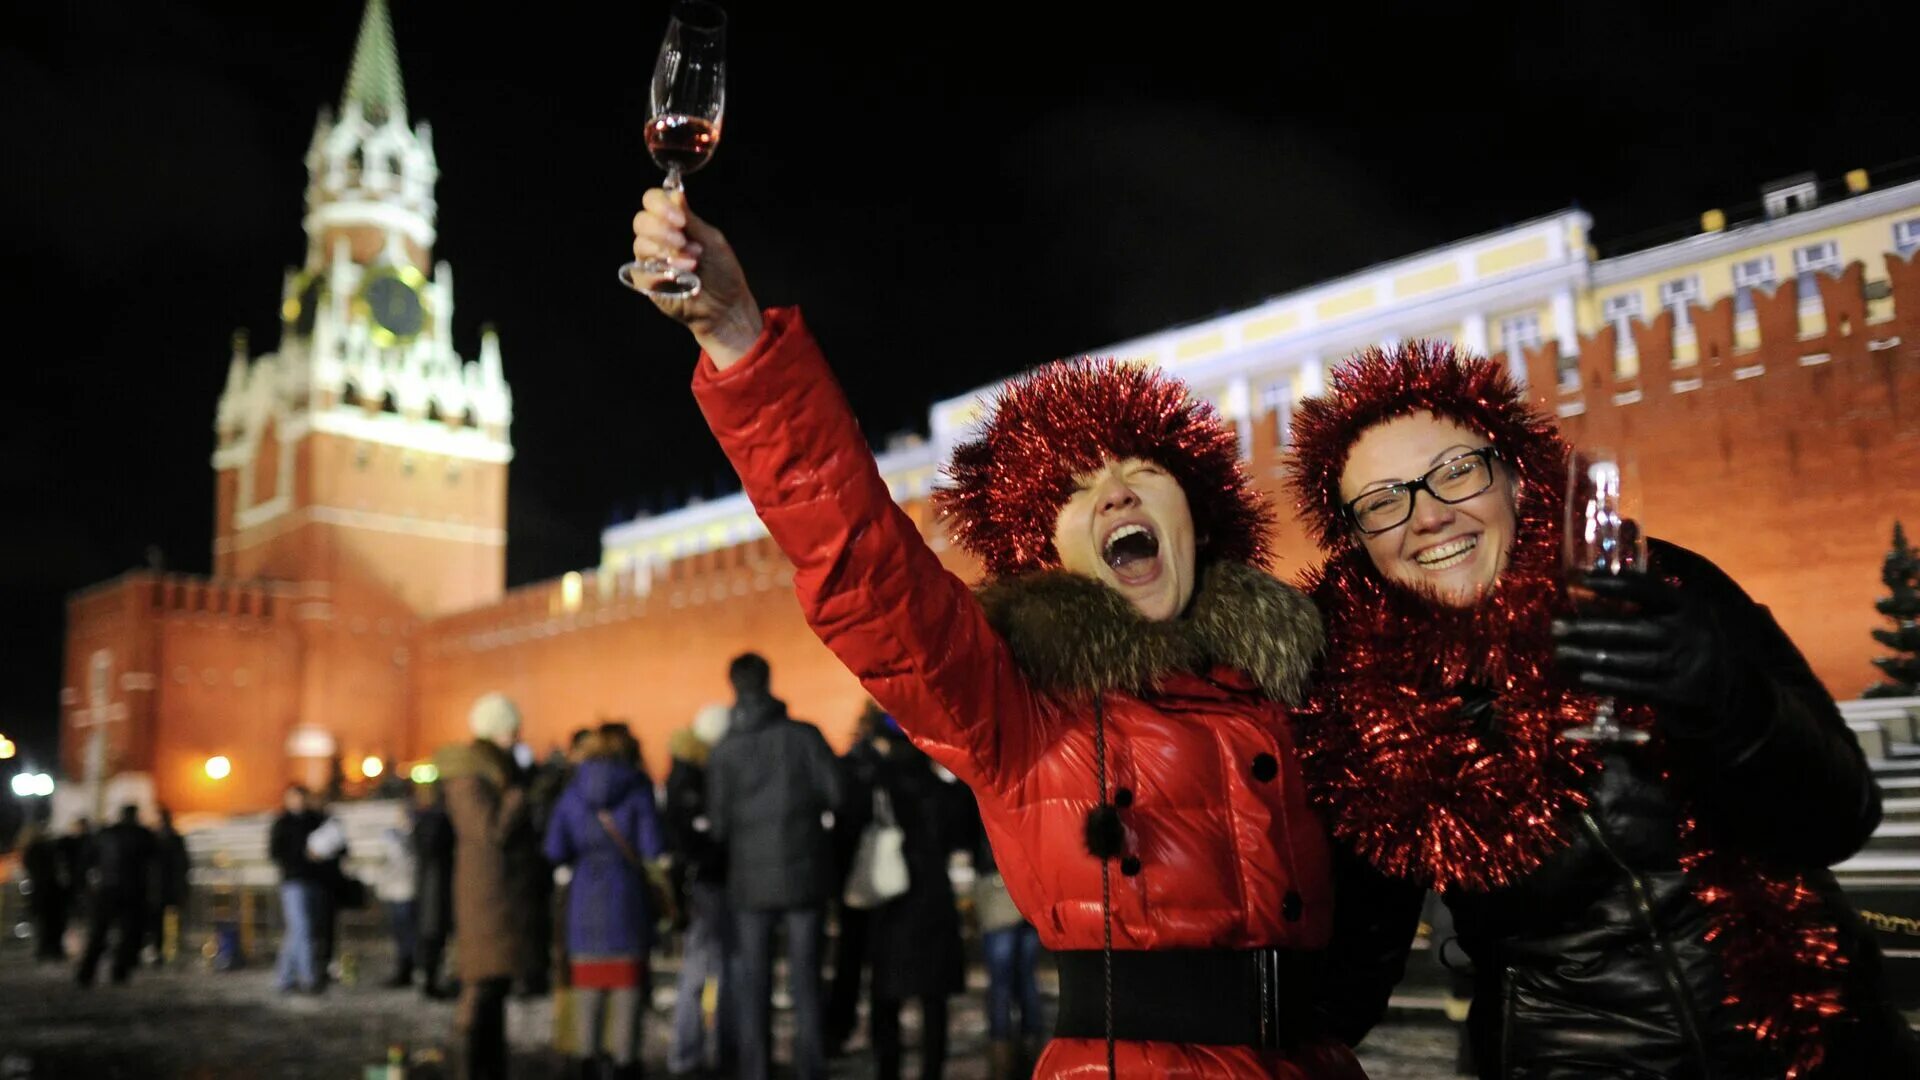 Красная площадь новый год. Люди на красной площади в новый год. Празднование нового года в России на красной площади. Красная площадь в новогоднюю ночь.